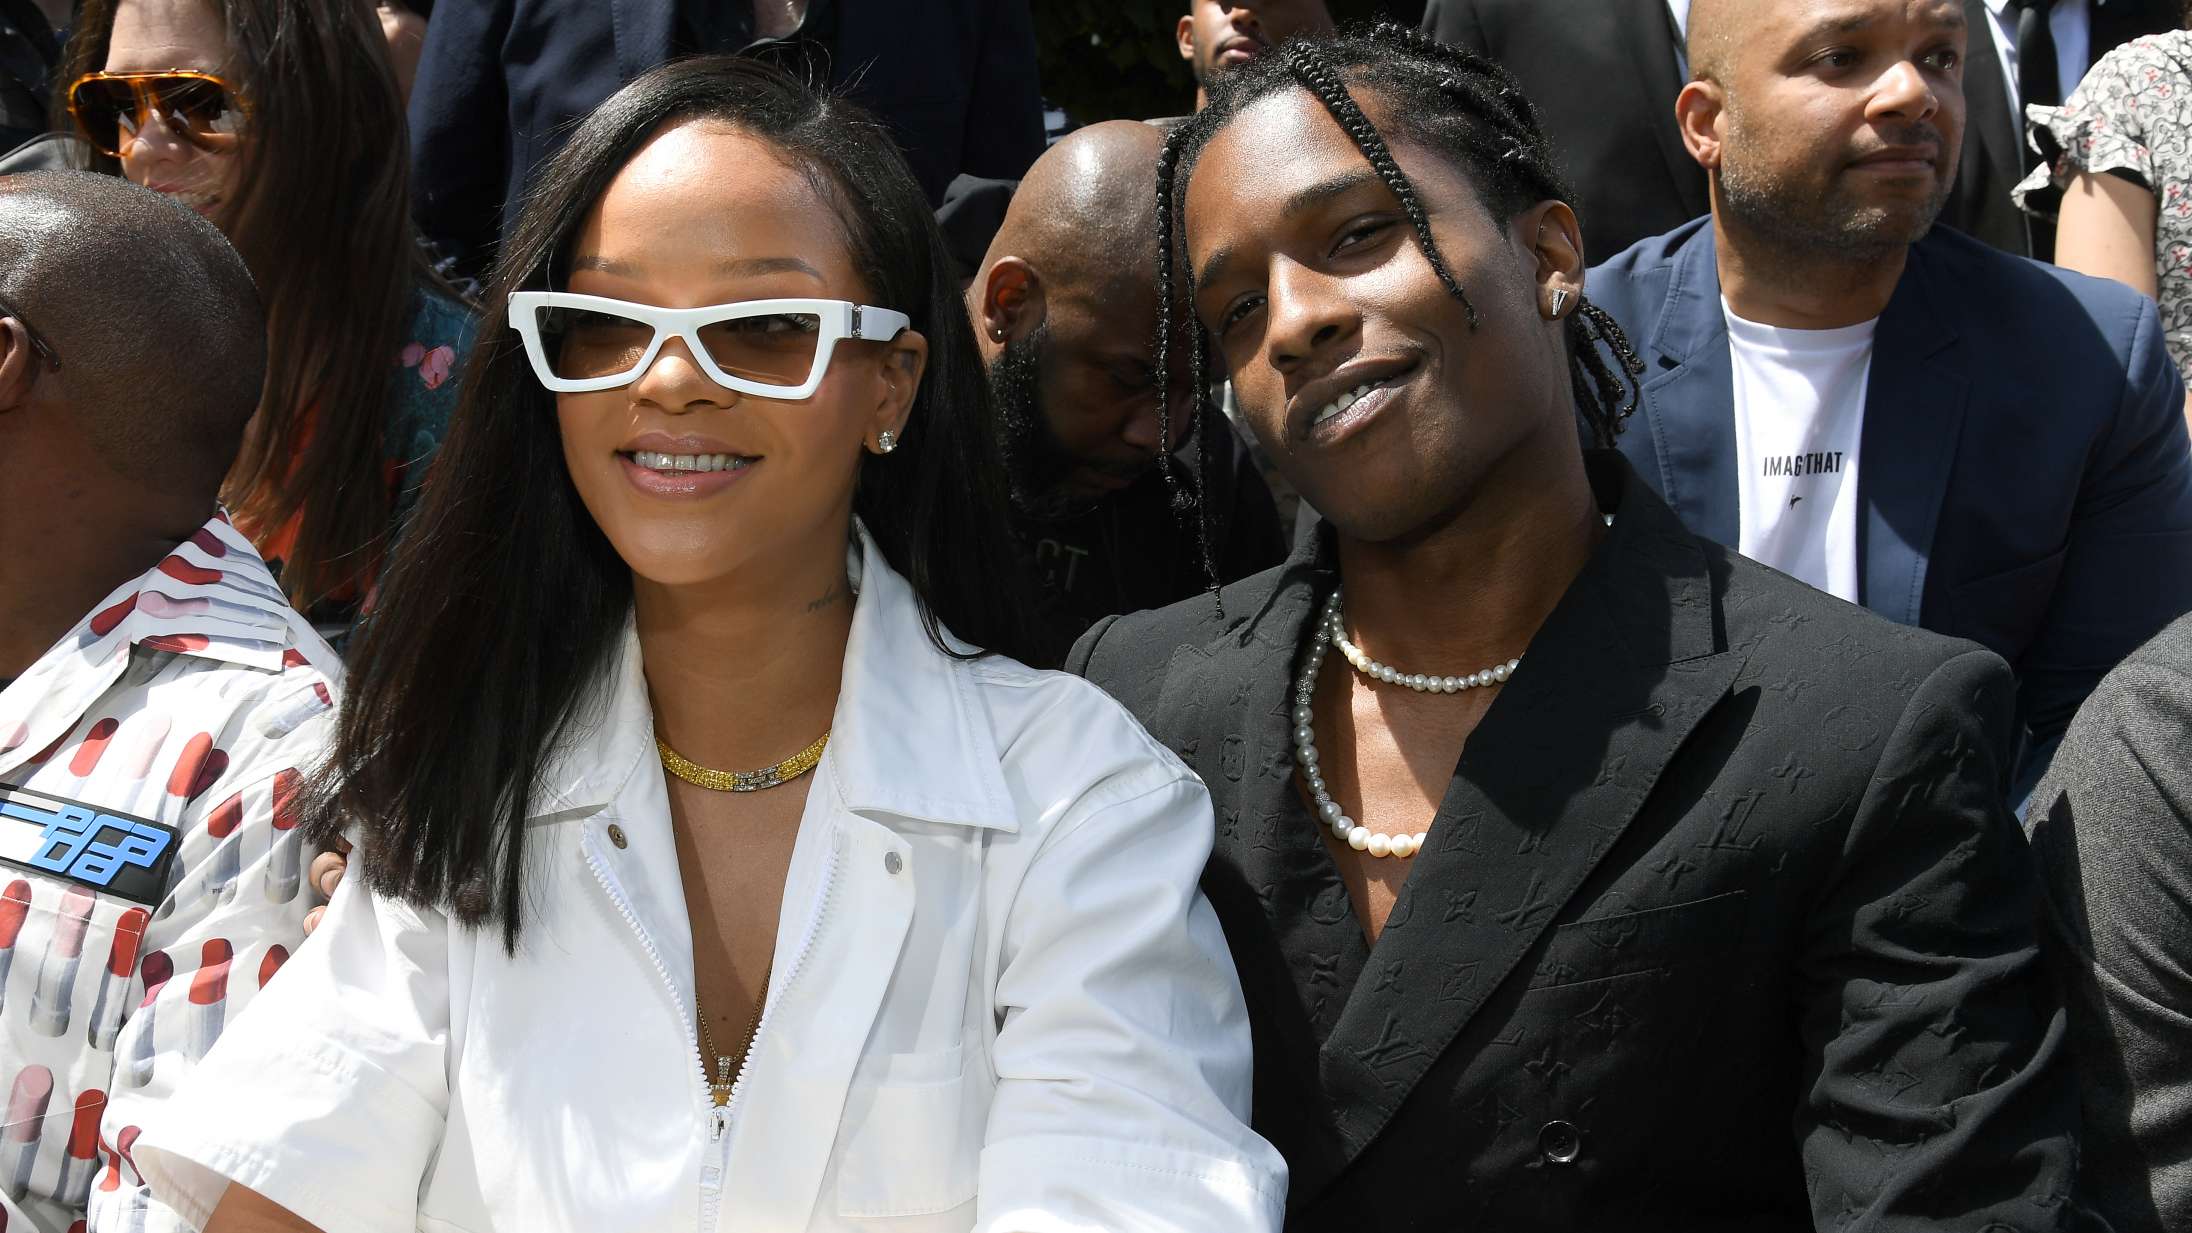 Vores fem bedste bud på et kendispar-kælenavn til Rihanna og ASAP Rocky